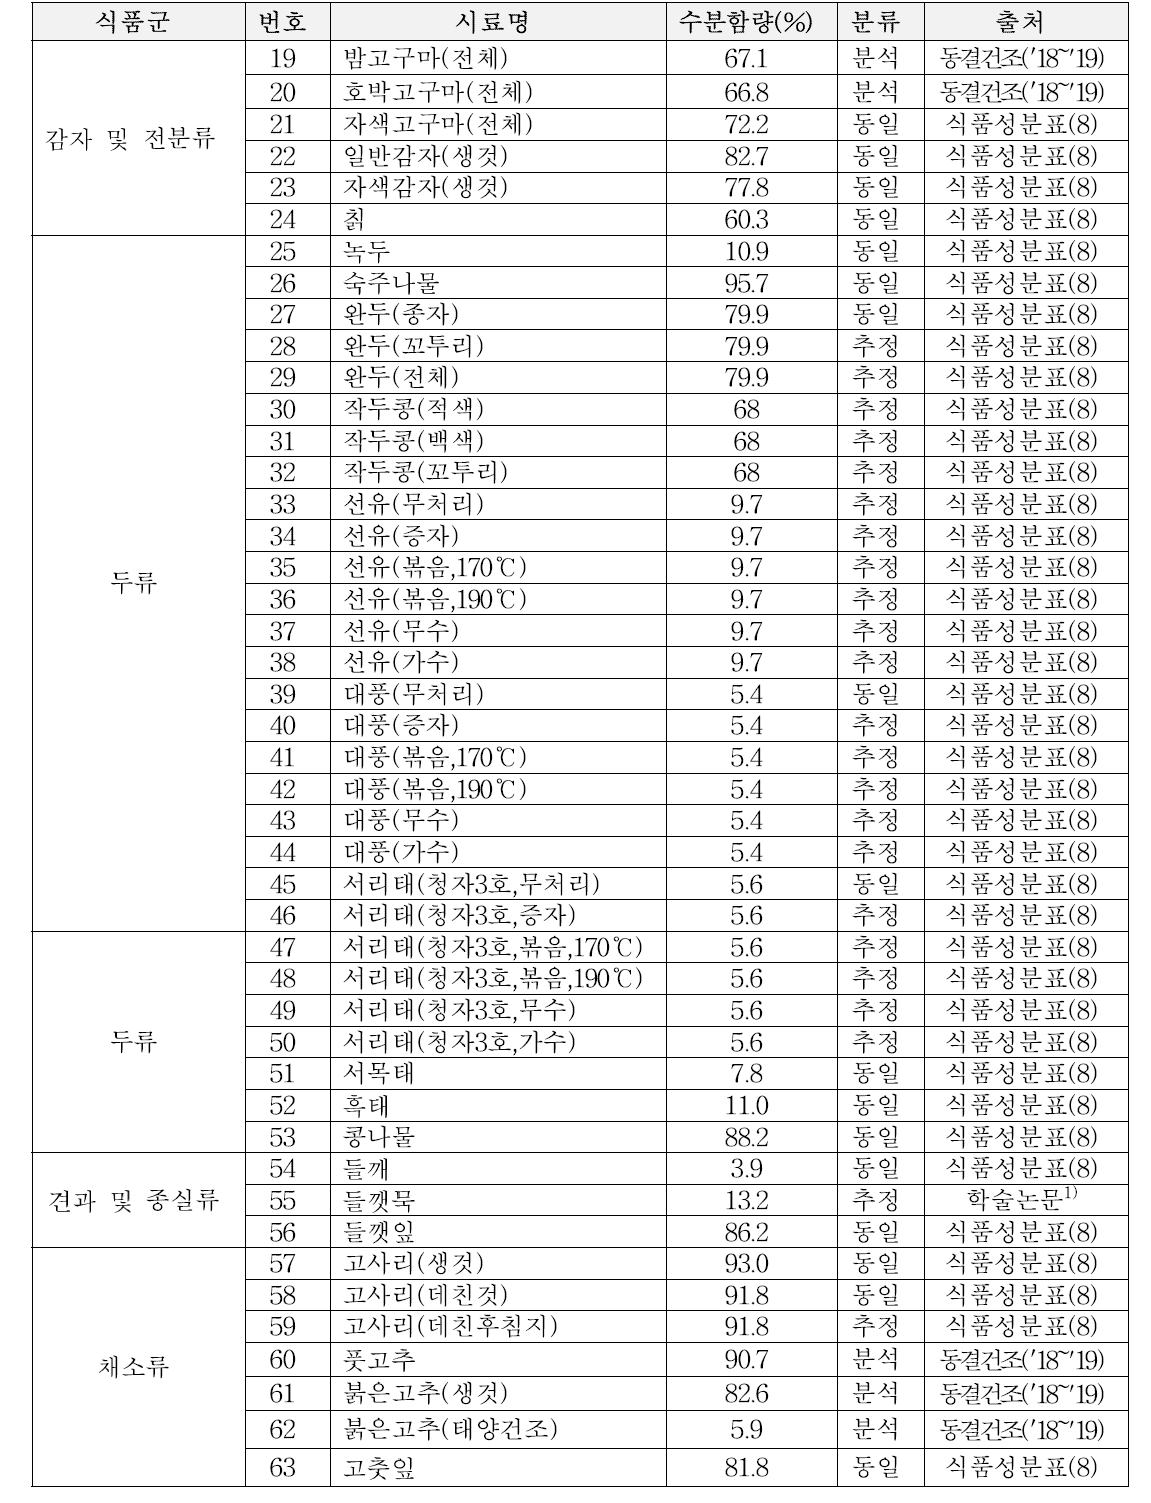 플라보노이드 DB 수록 시료의 수분함량 (계속)